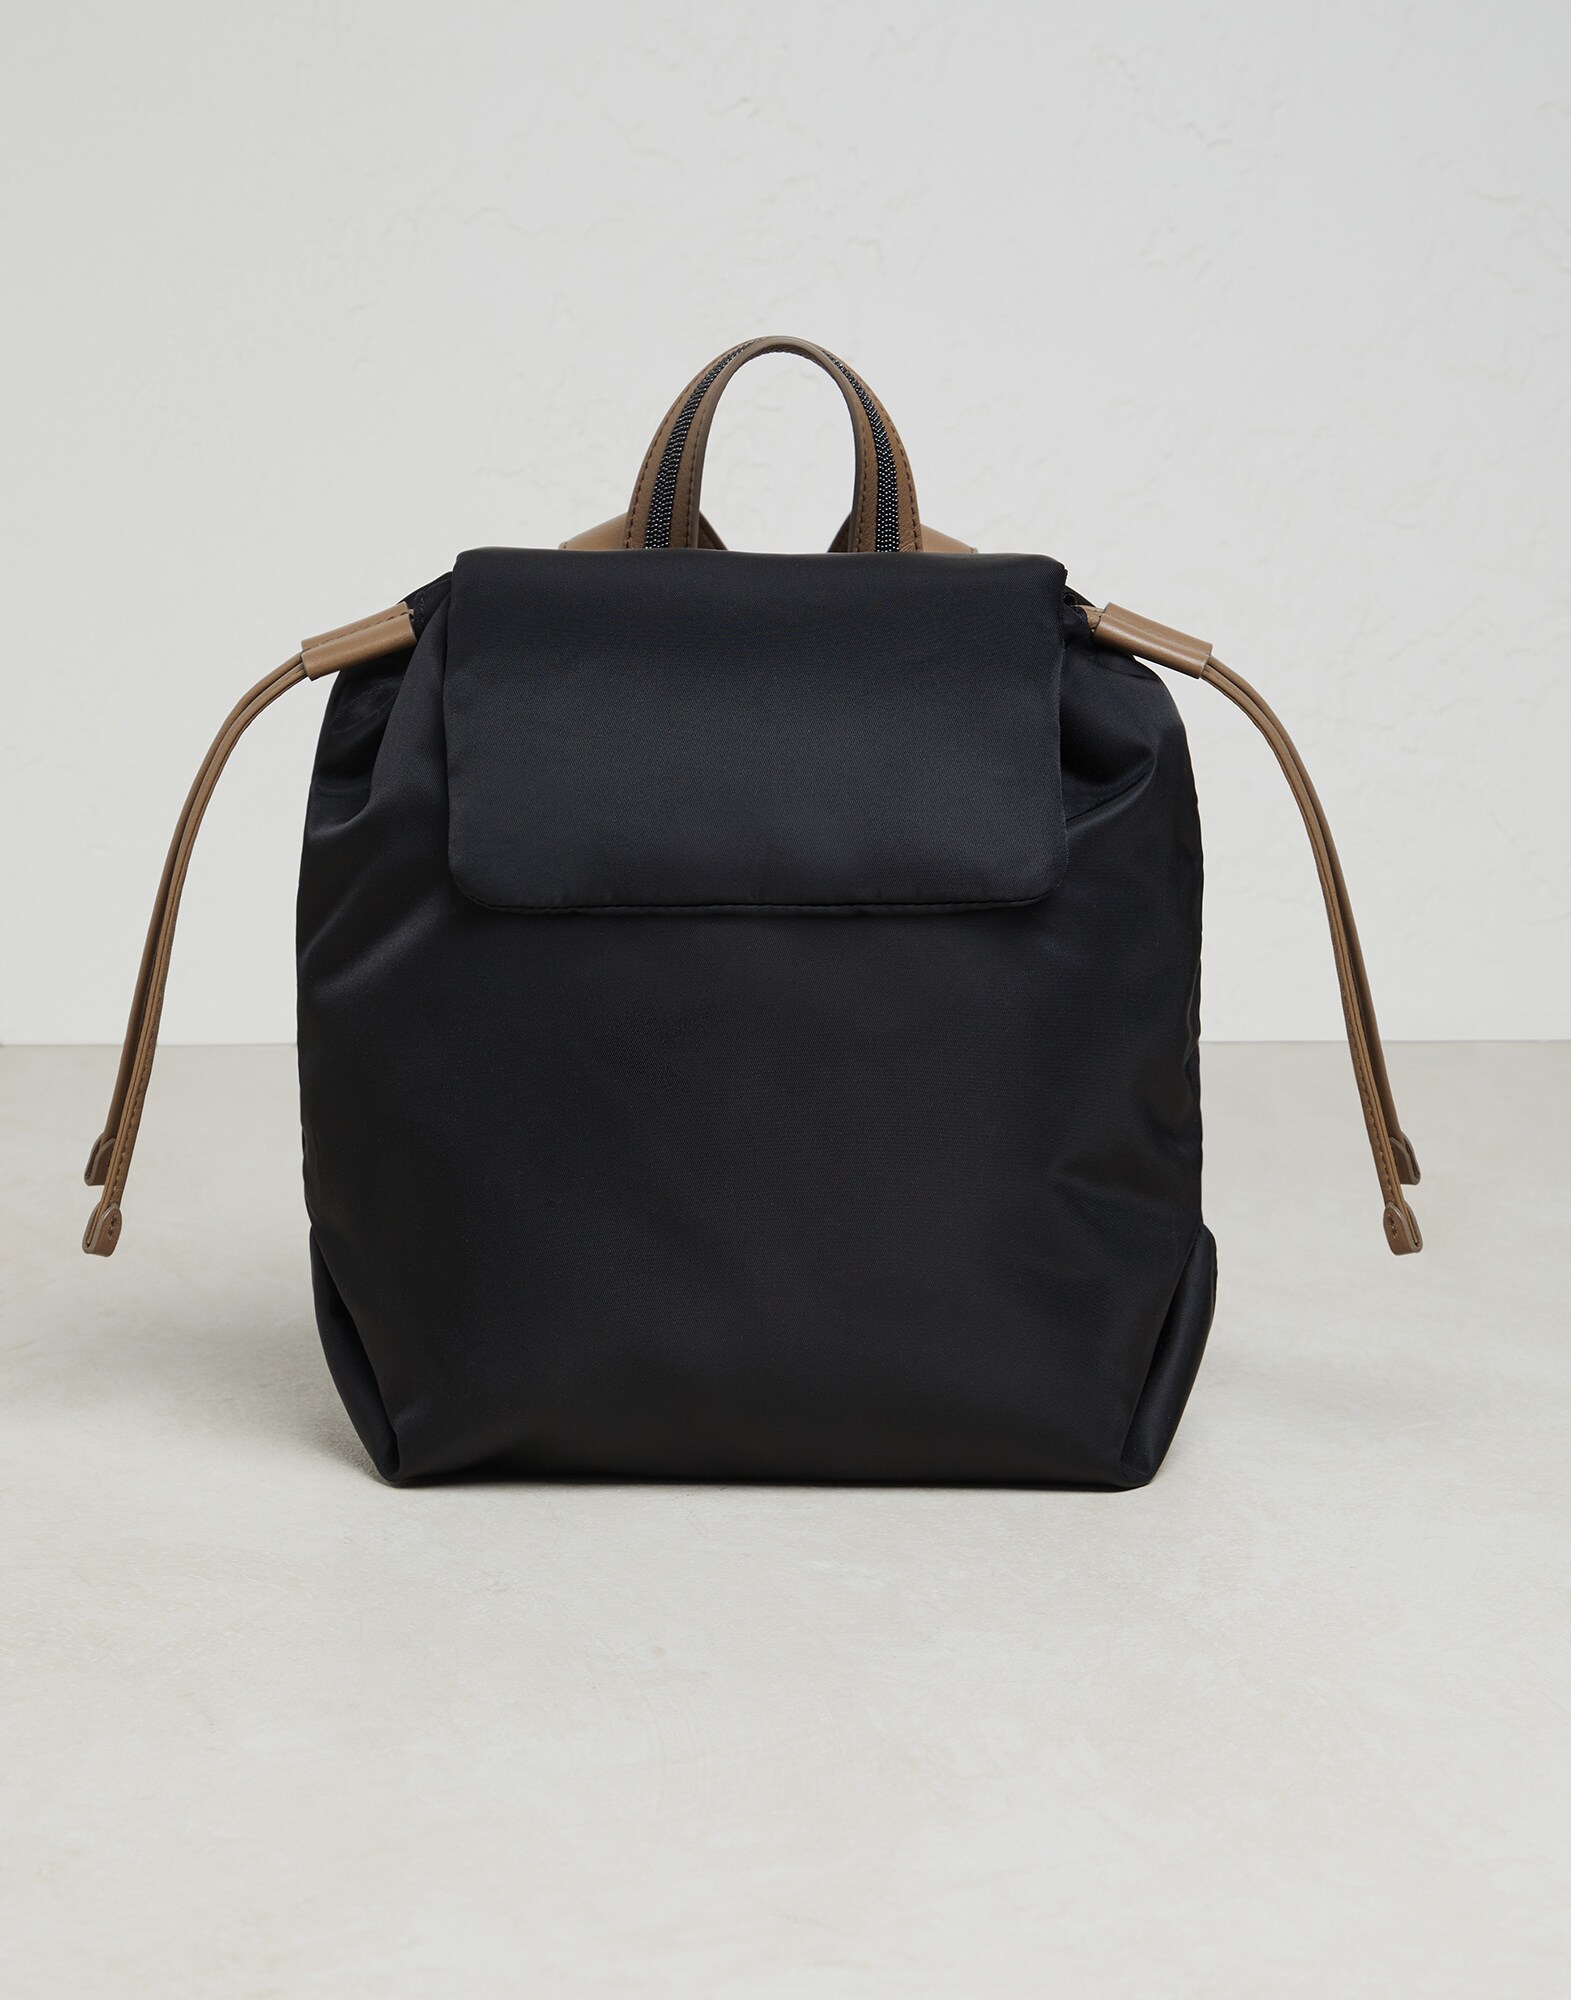 Nylon backpack with monili